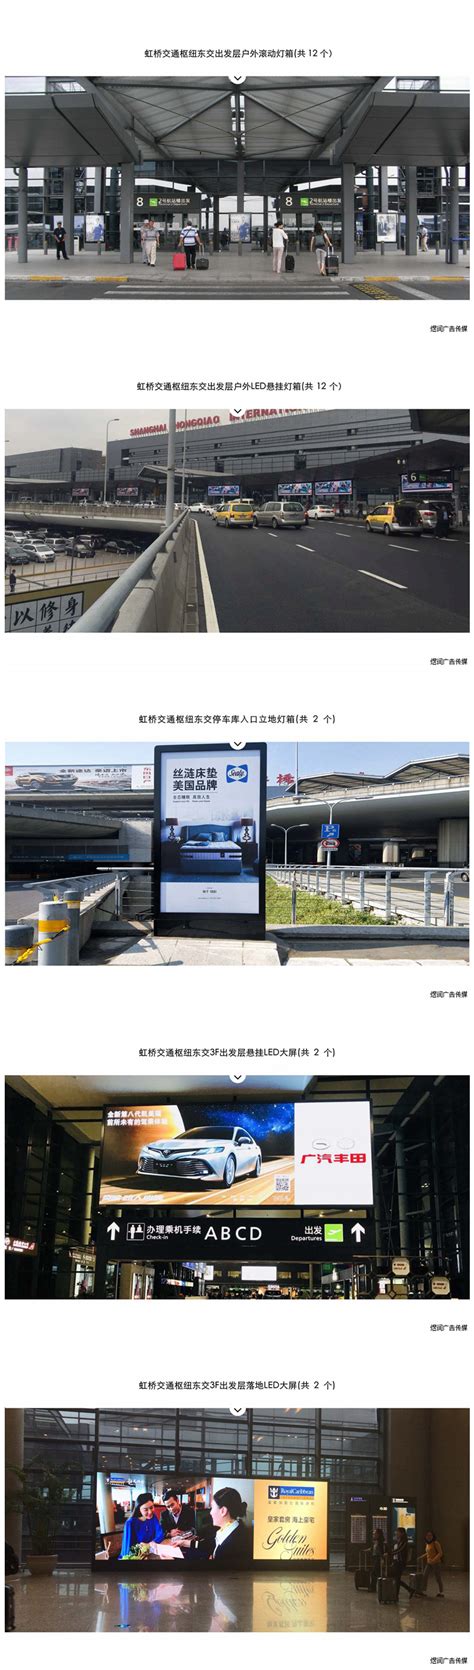 上海虹桥机场T2航站楼广告投放电话,2020年虹桥机场广告价格